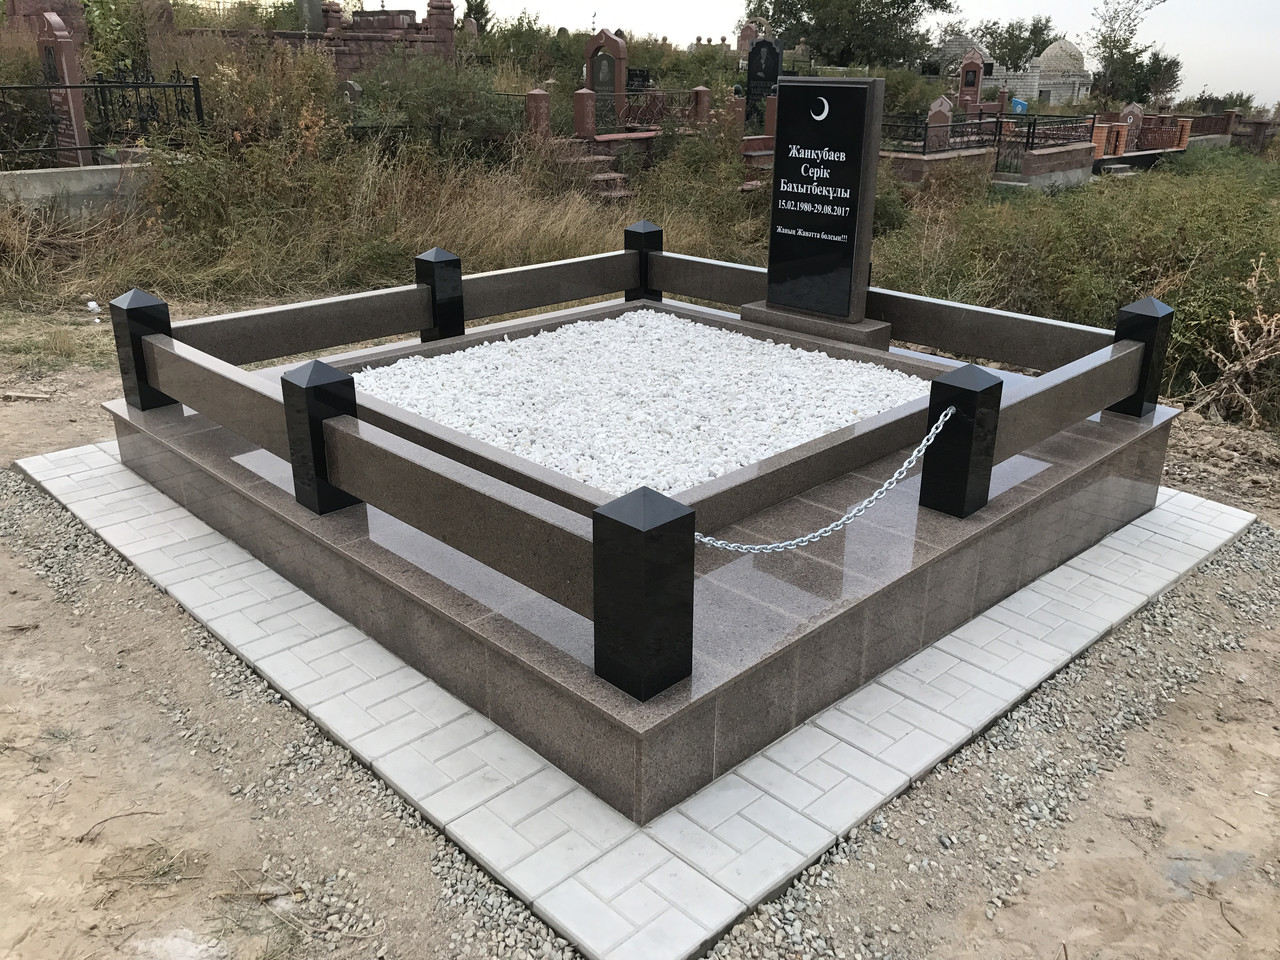 Мусульманская могила облицована гранитной плиткой